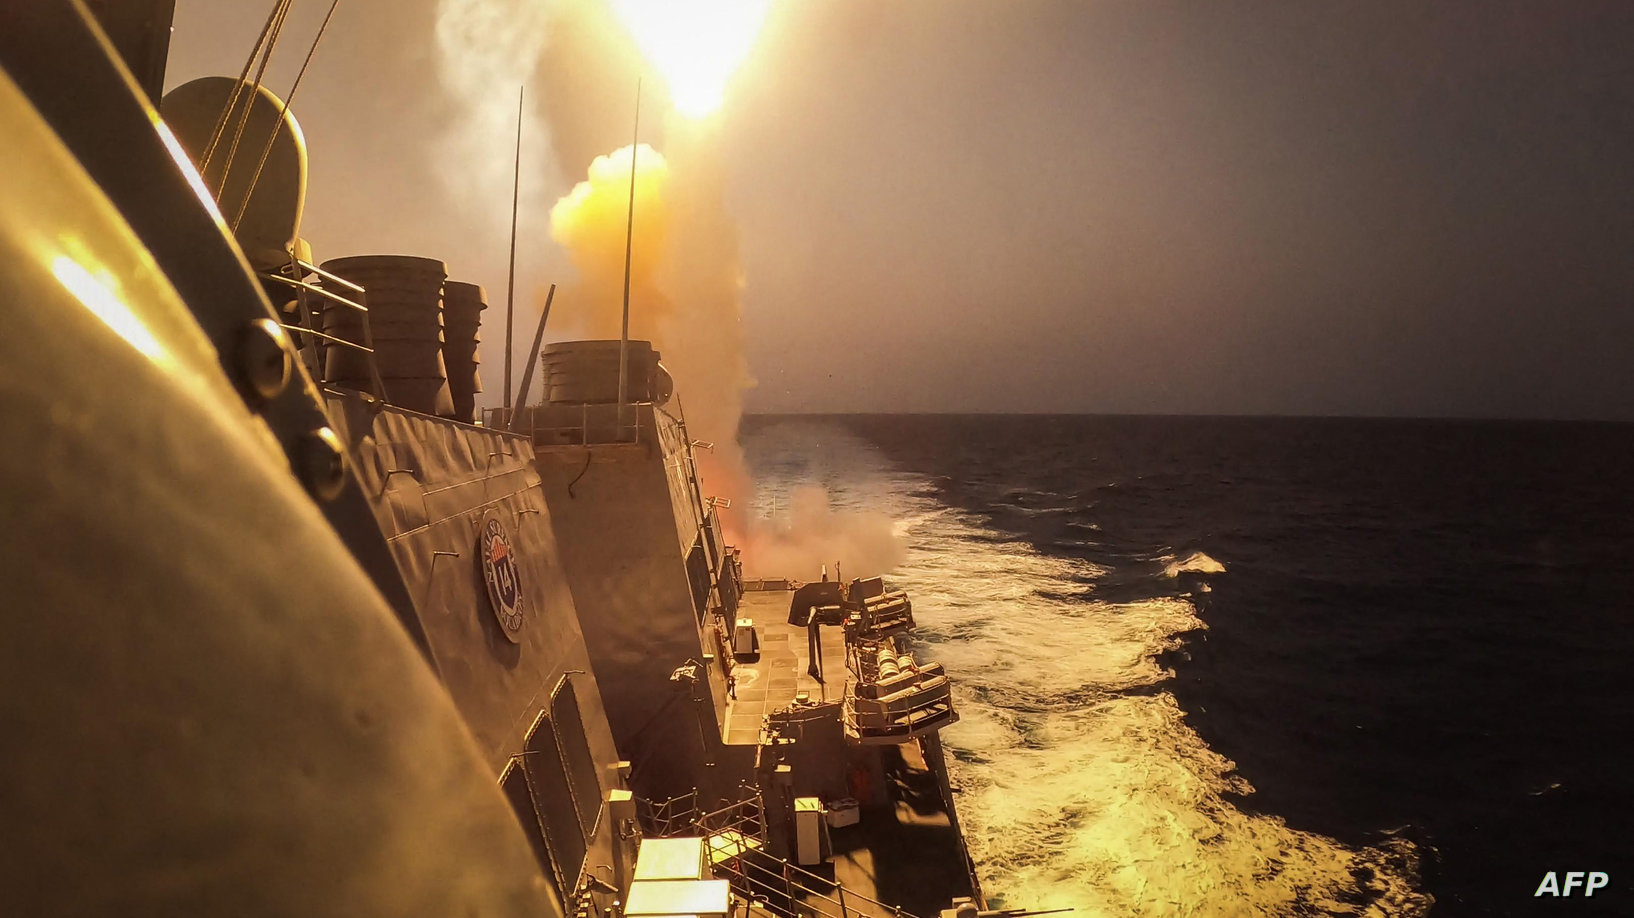 سنتكوم تعلن عن ضربة جديدة ضد صاروخ للحوثيين يهدد السفن في البحر الأحمر